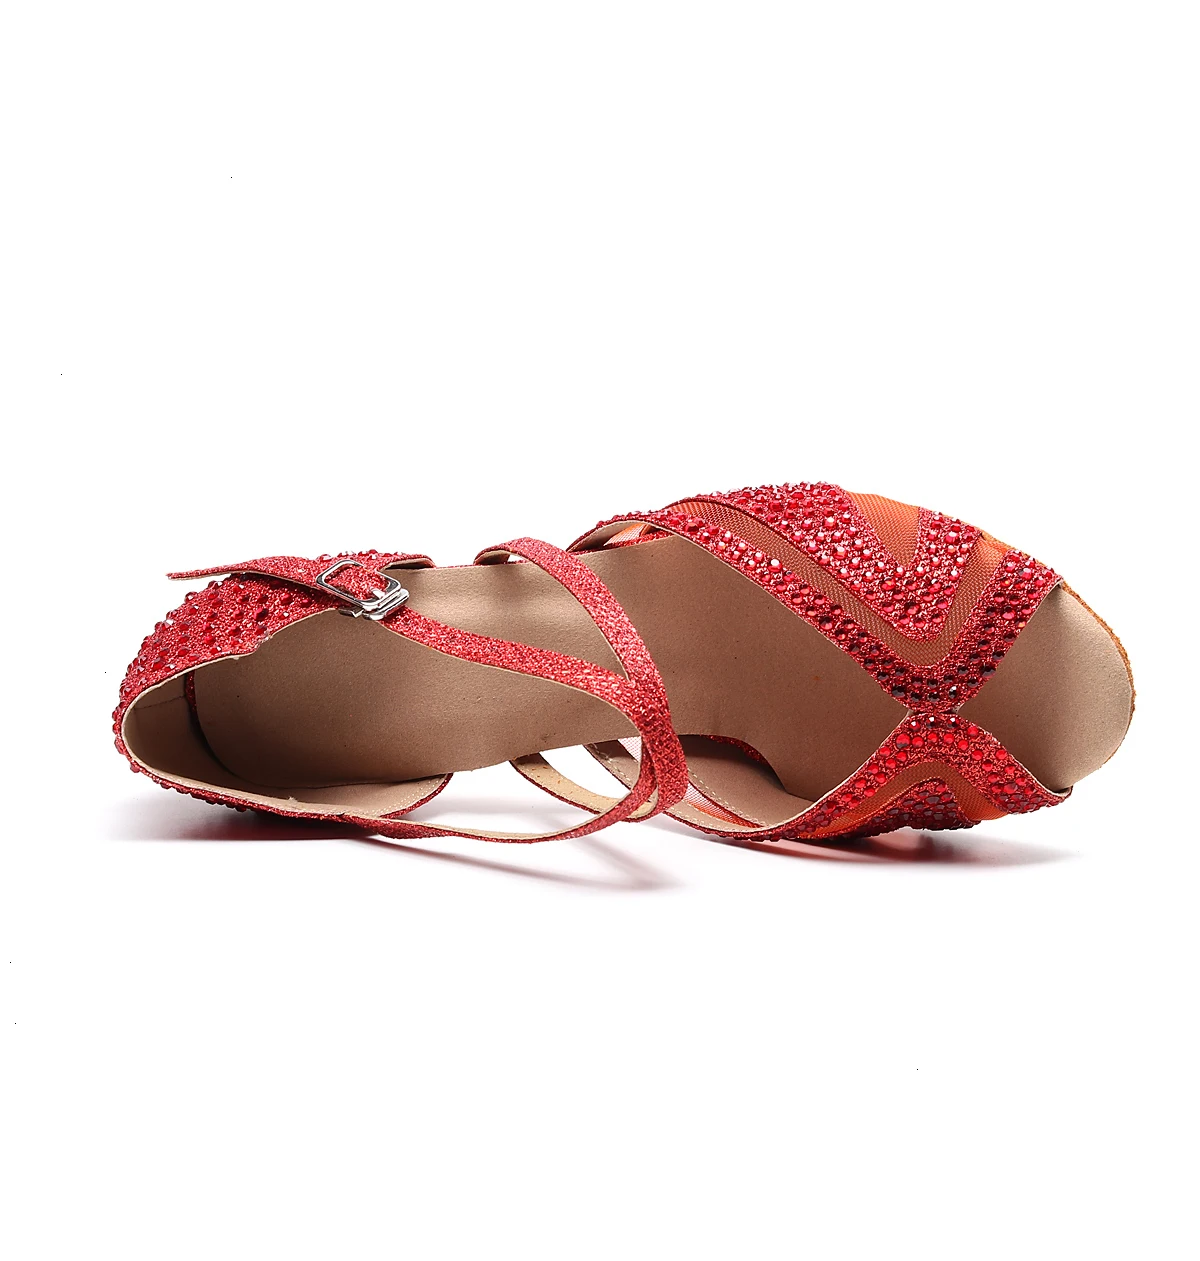 Goettin Tango Practice/Обувь для бальных танцев, латинских танцев для женщин, скидки, пикантная обувь на каблуке 7,5 см, Sandales Femme